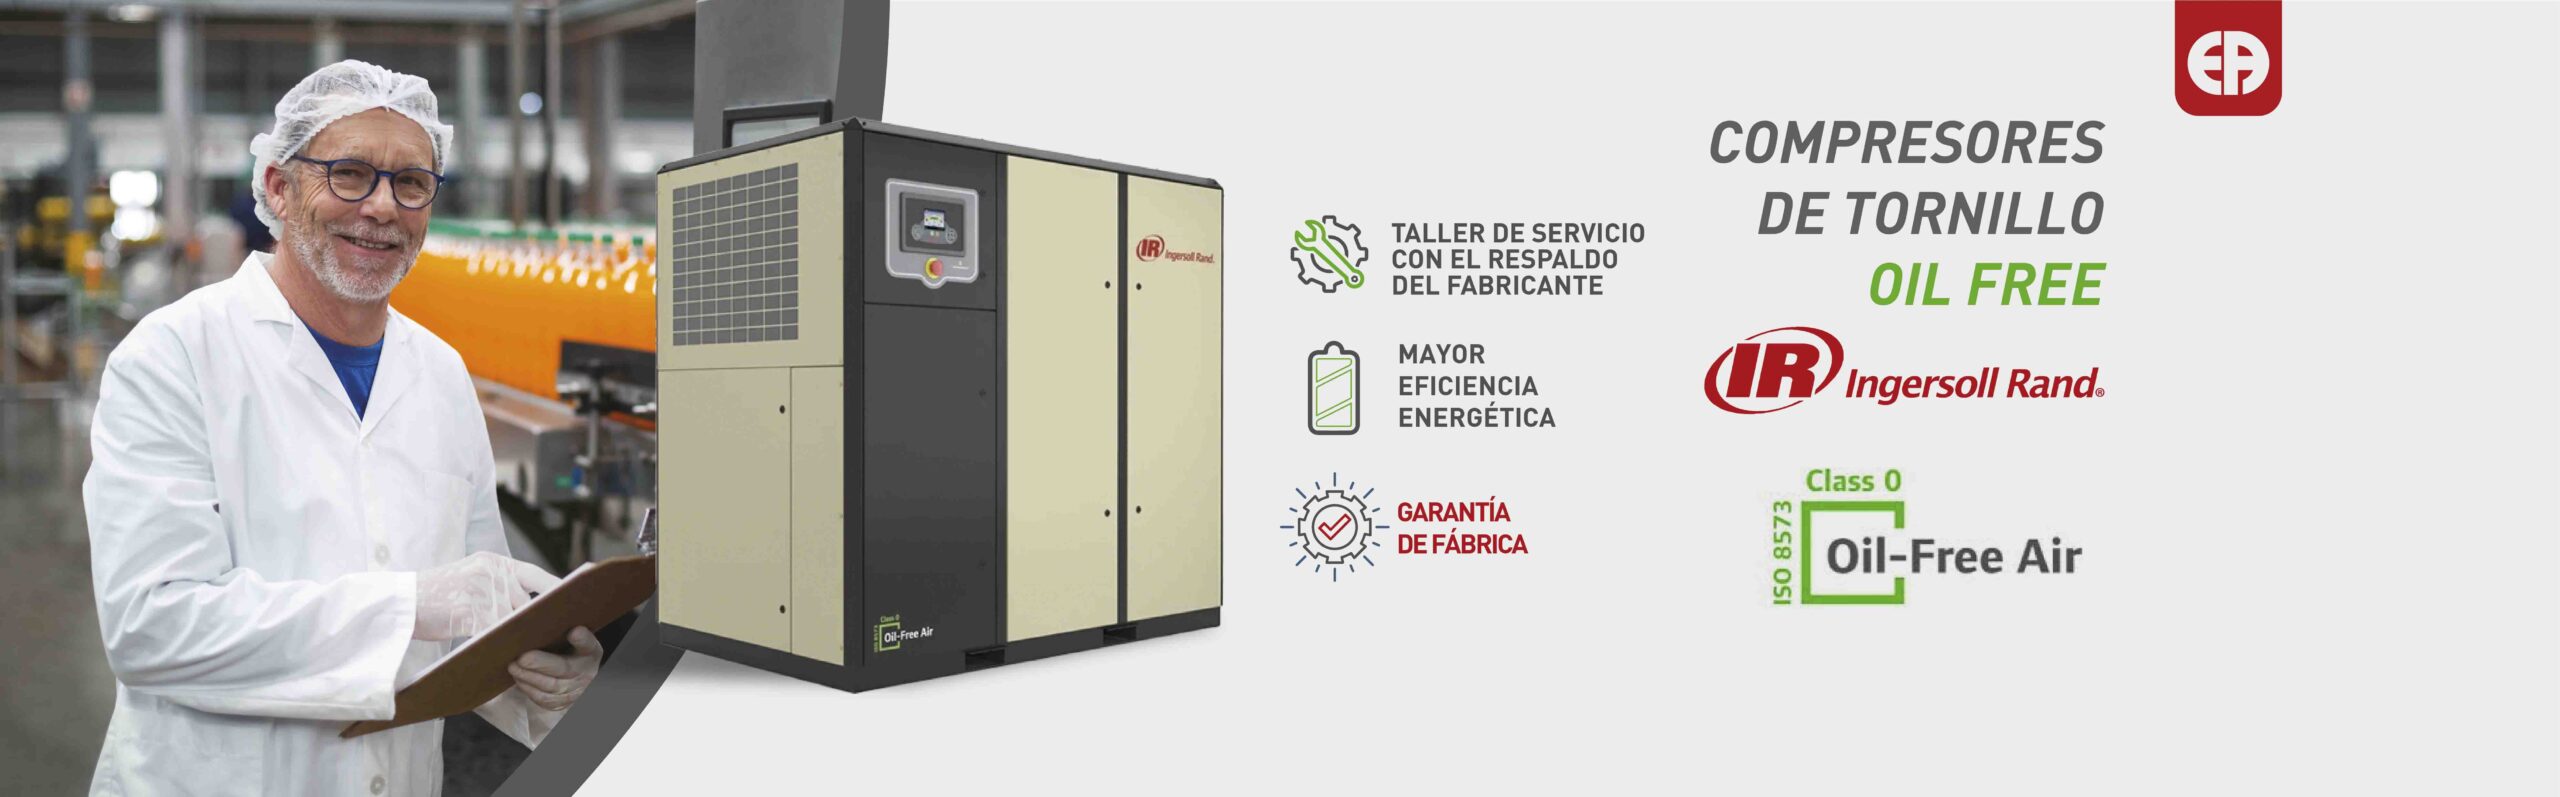 Soluciones de aire comprimido Ingersoll Rand en Panamá